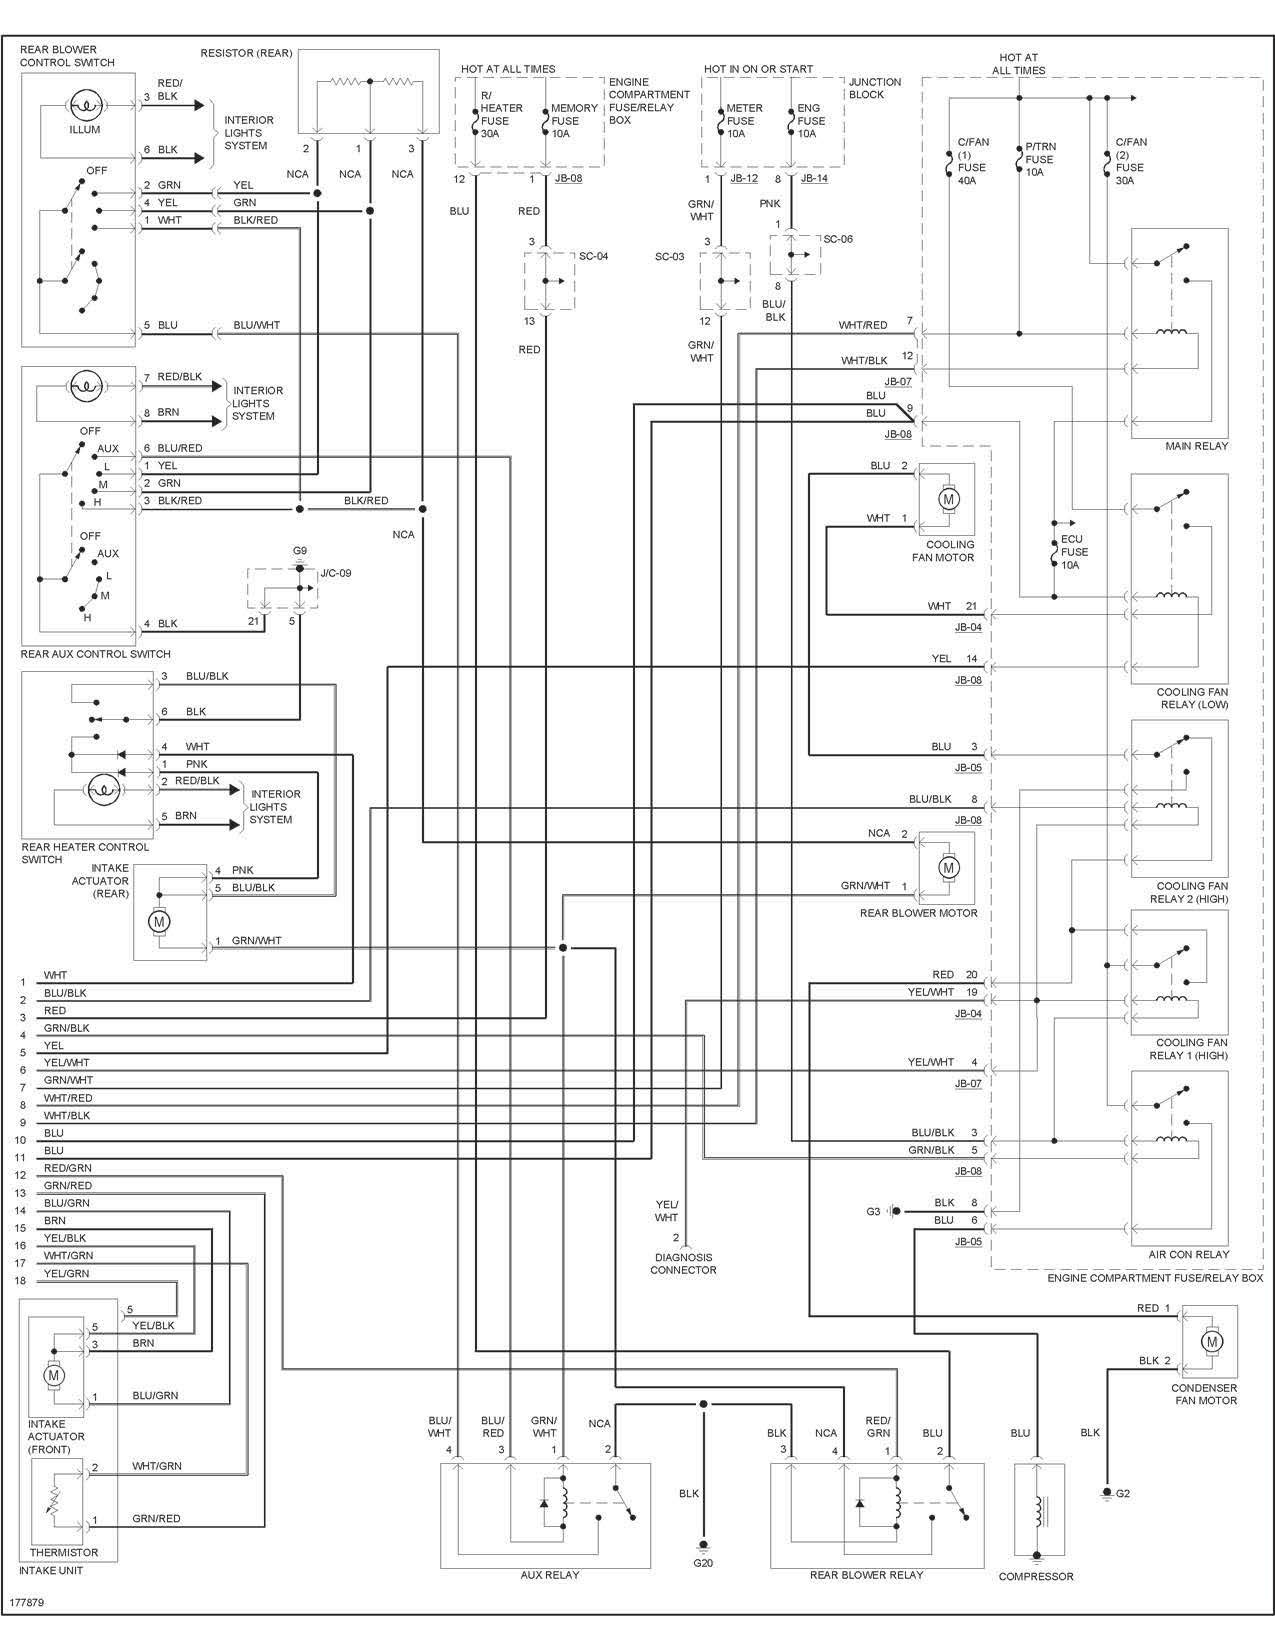 2001 Kia Spectra Engine Diagram Kia Diagram Wirings Layout Wiring Diagrams • Of 2001 Kia Spectra Engine Diagram